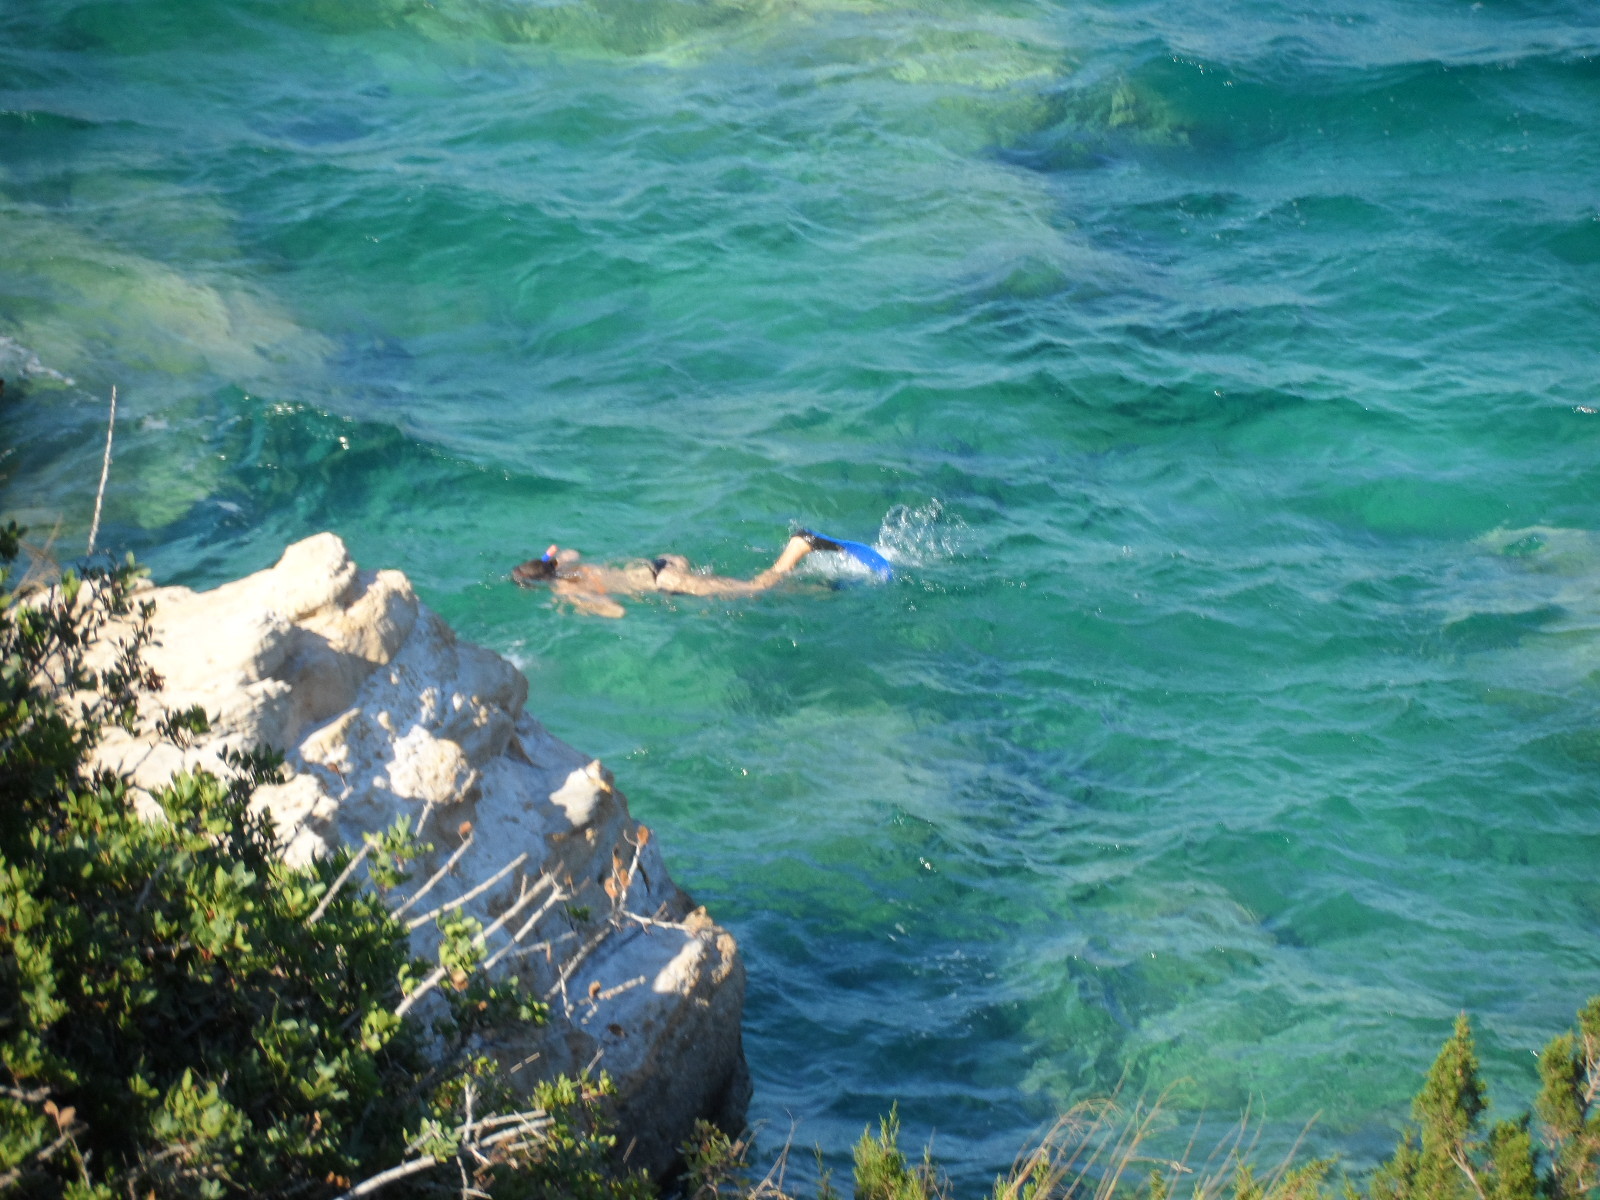 Κολυμπήστε άφοβα! “Εξαιρετικής ποιότητας” οι ελληνικές παραλίες σύμφωνα με την ΕΕ